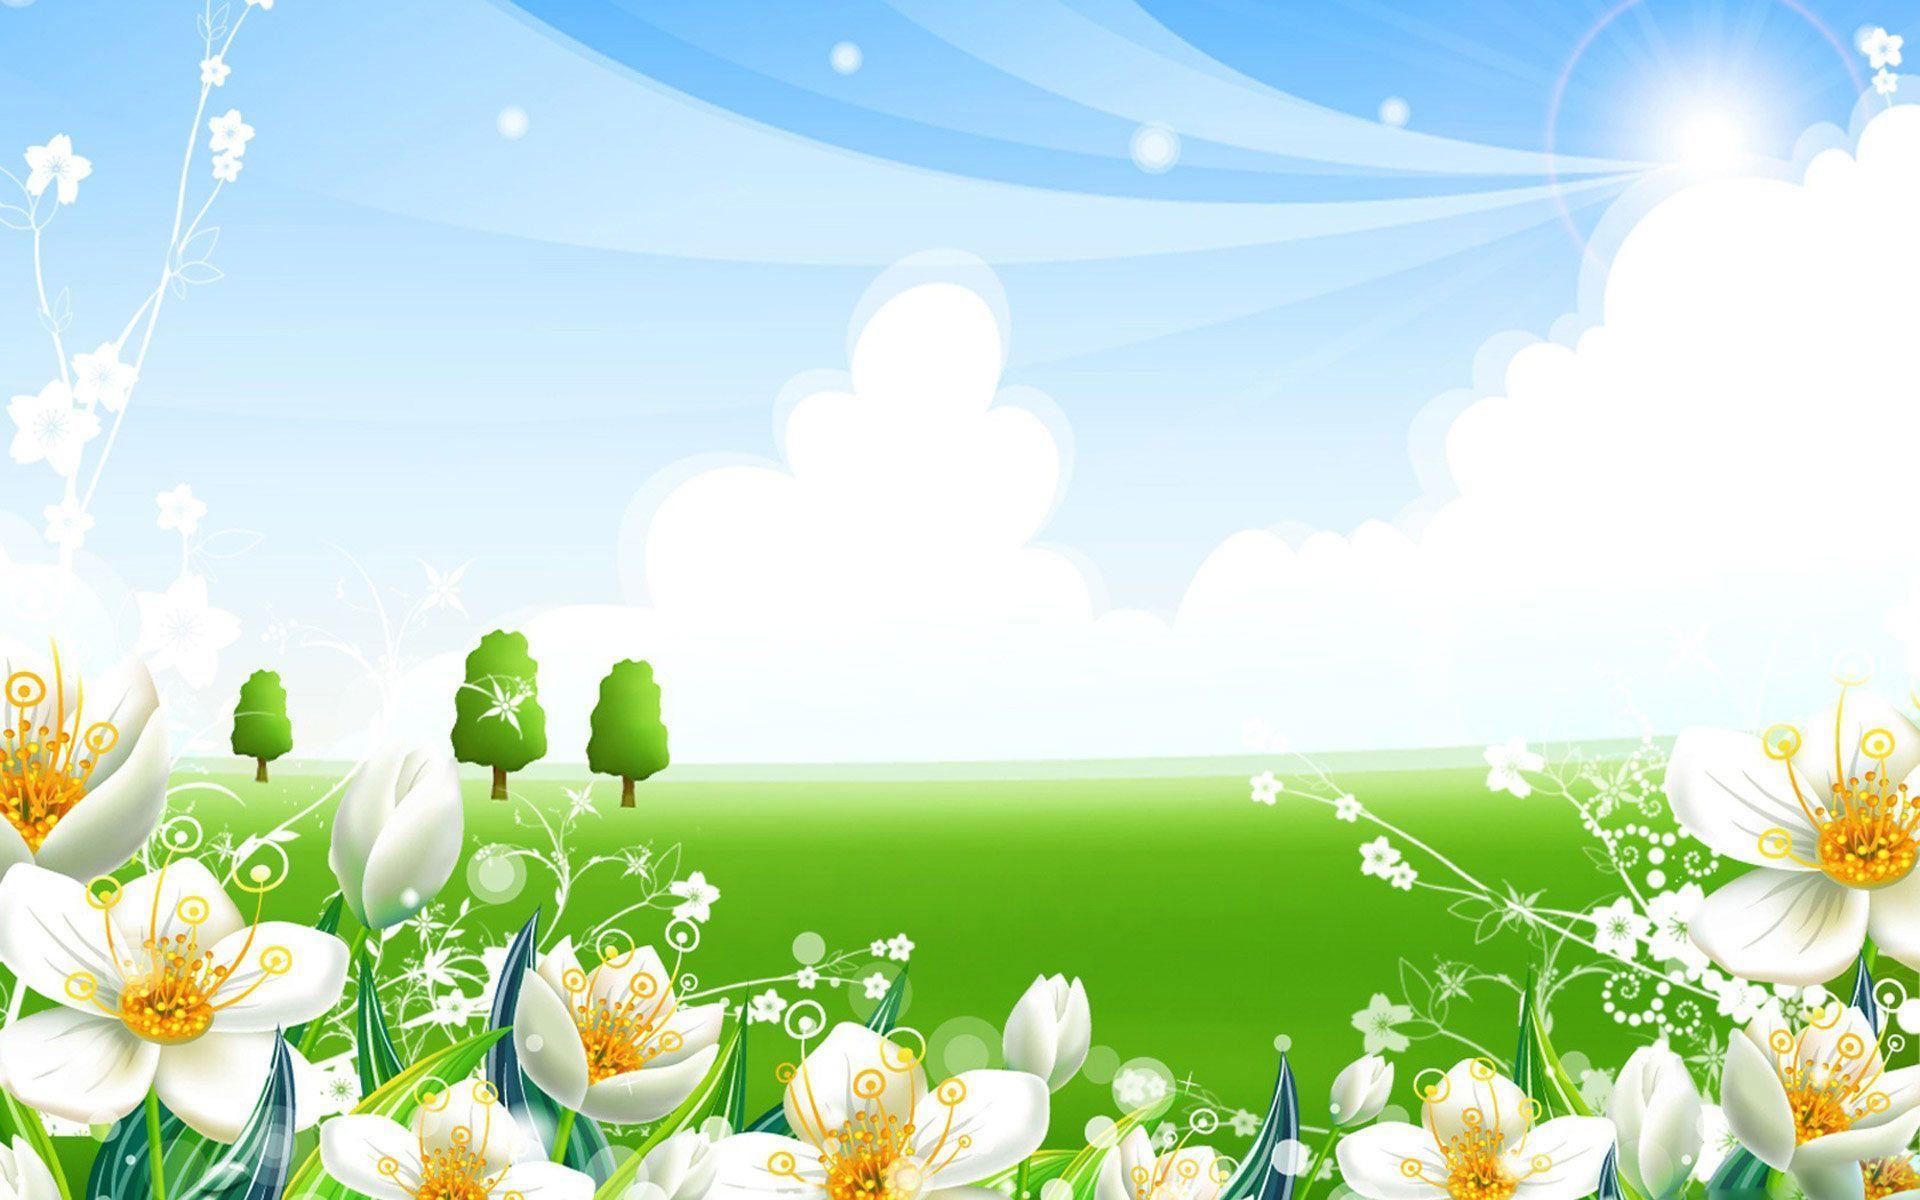 Desktop Wallpaper · Gallery · Windows 7 · Summer meadow flowers